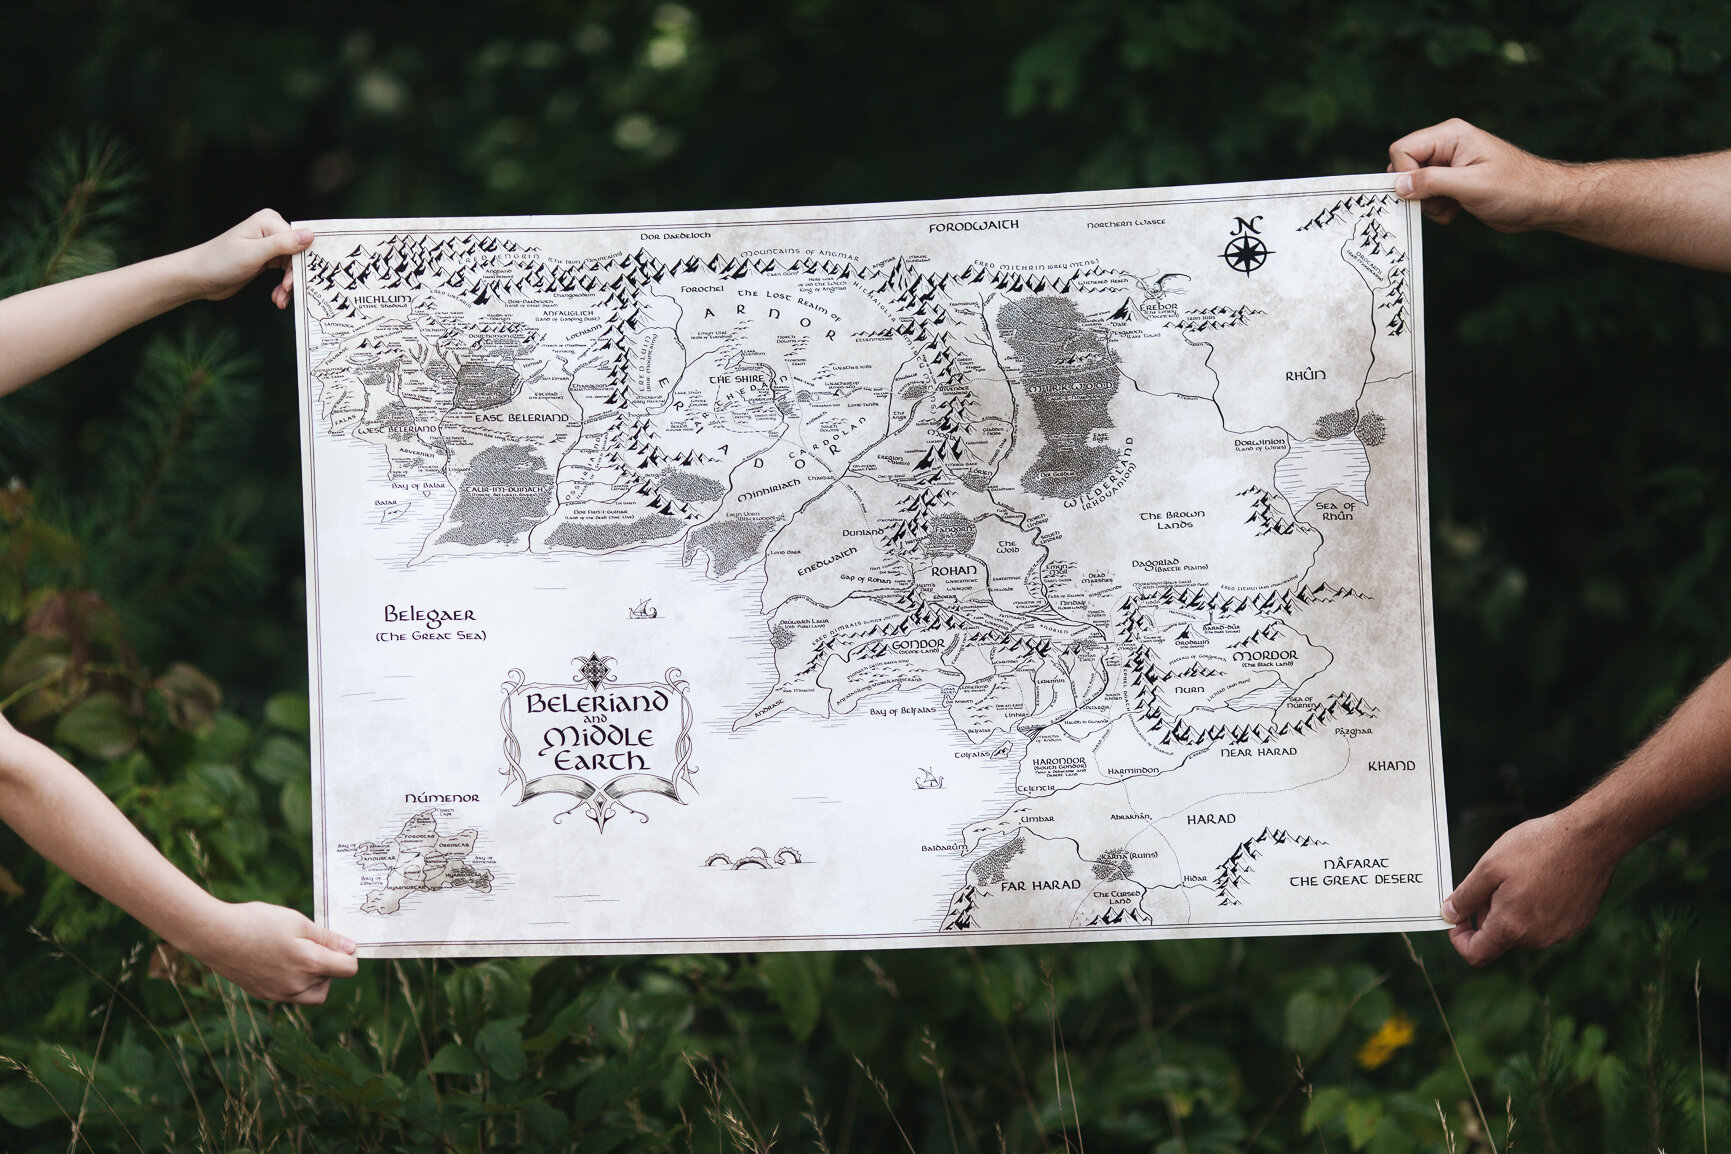 Beleriand  Middle earth, Silmarillion map, Tolkien